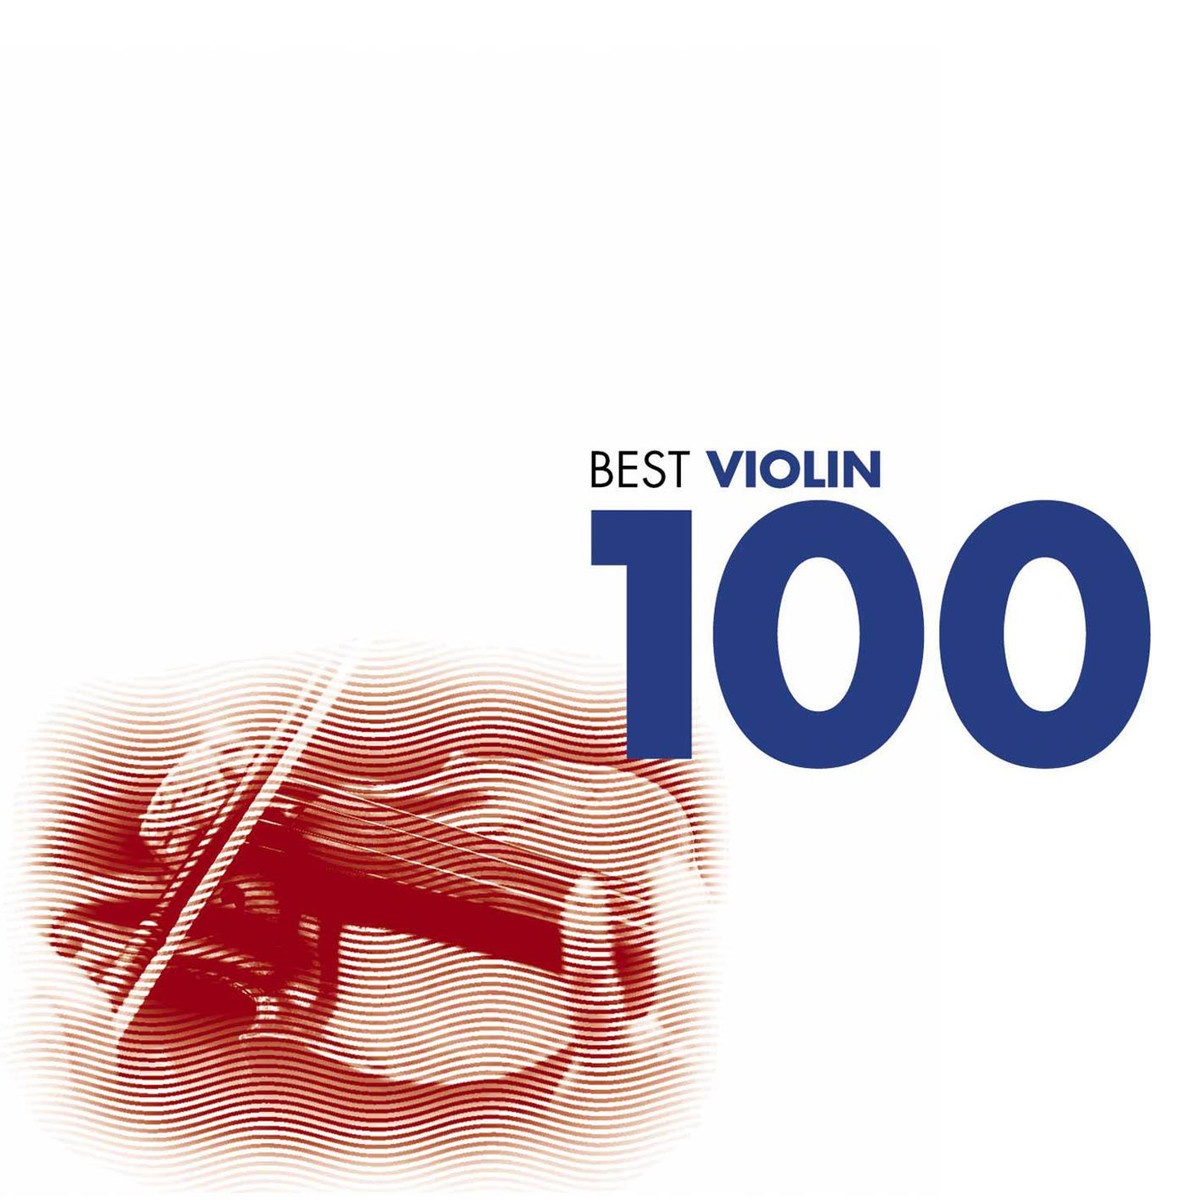 Vivaldi: Violin Sonata In A, Op. 2  2, RV 31  3. Adagio